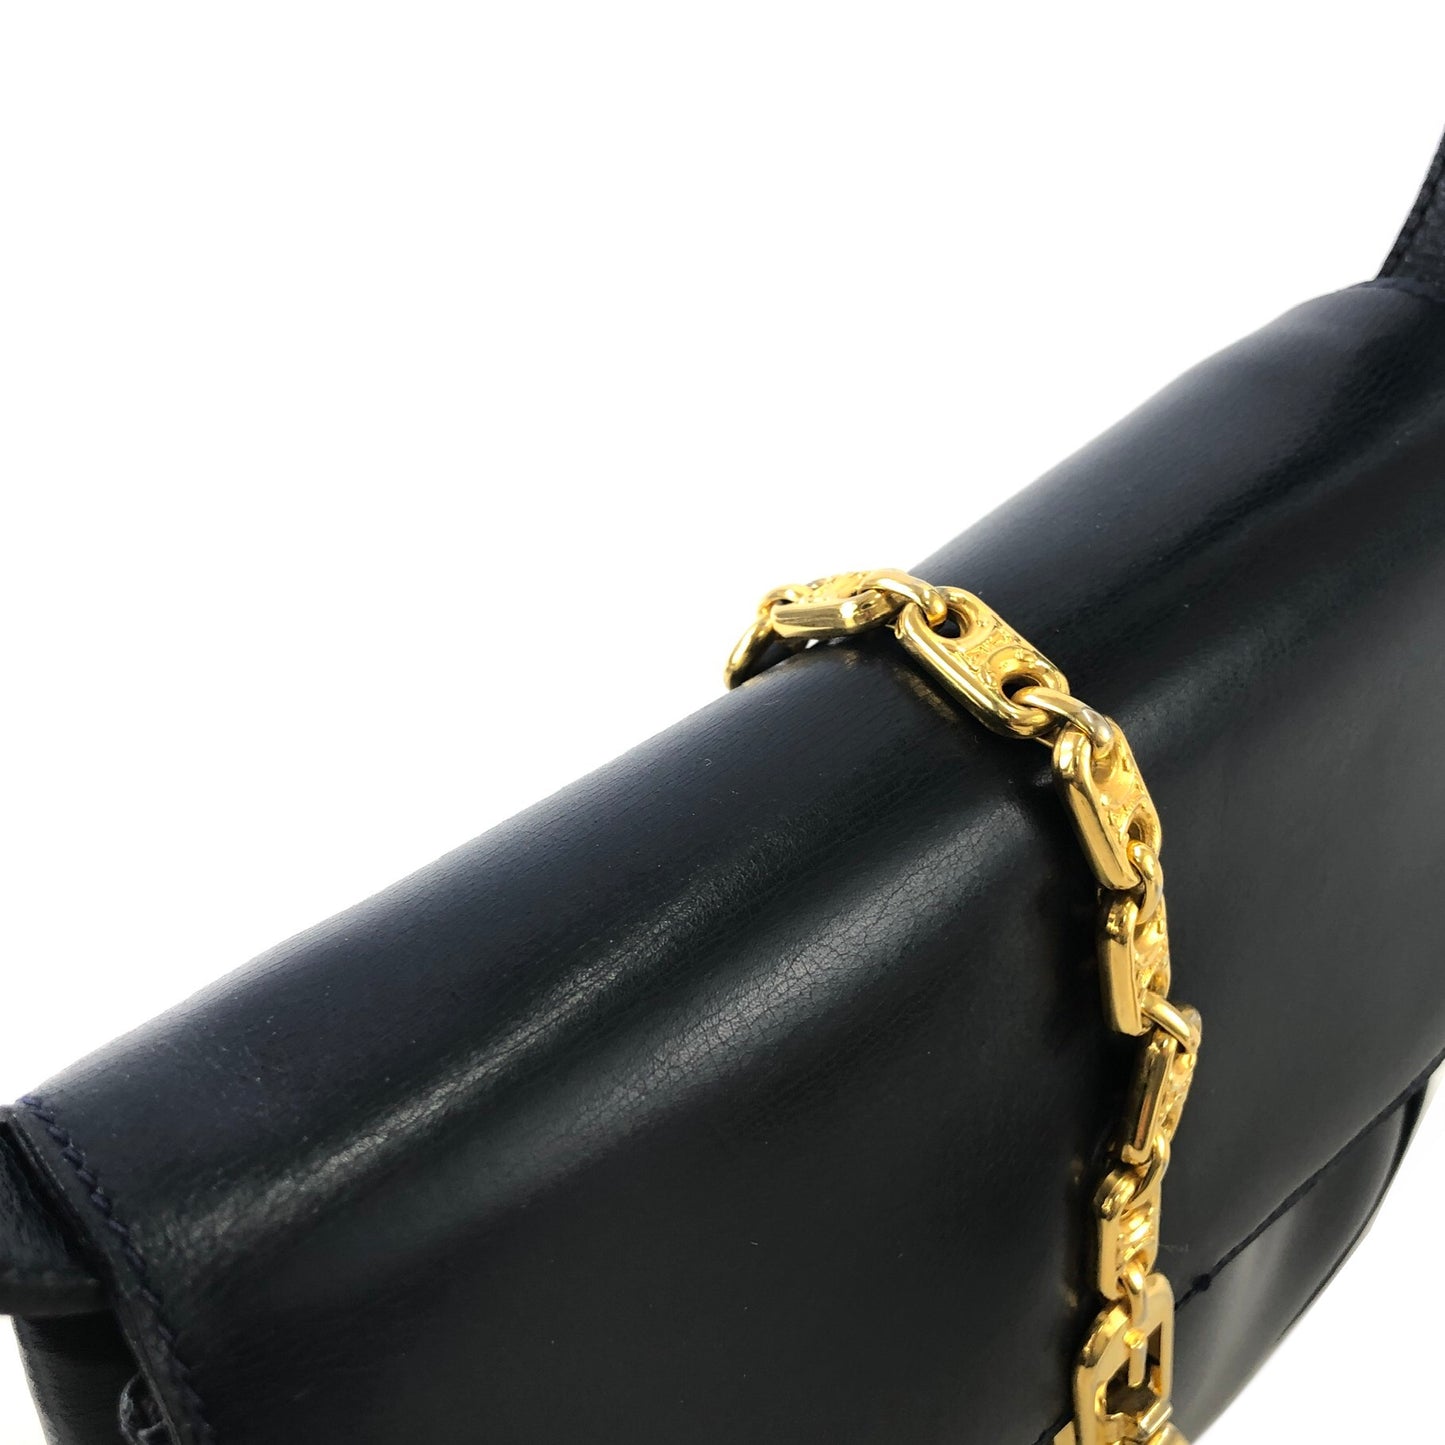 CELINE Triomphe Chain Leather Shoulder bag Navy Vintage admv2k